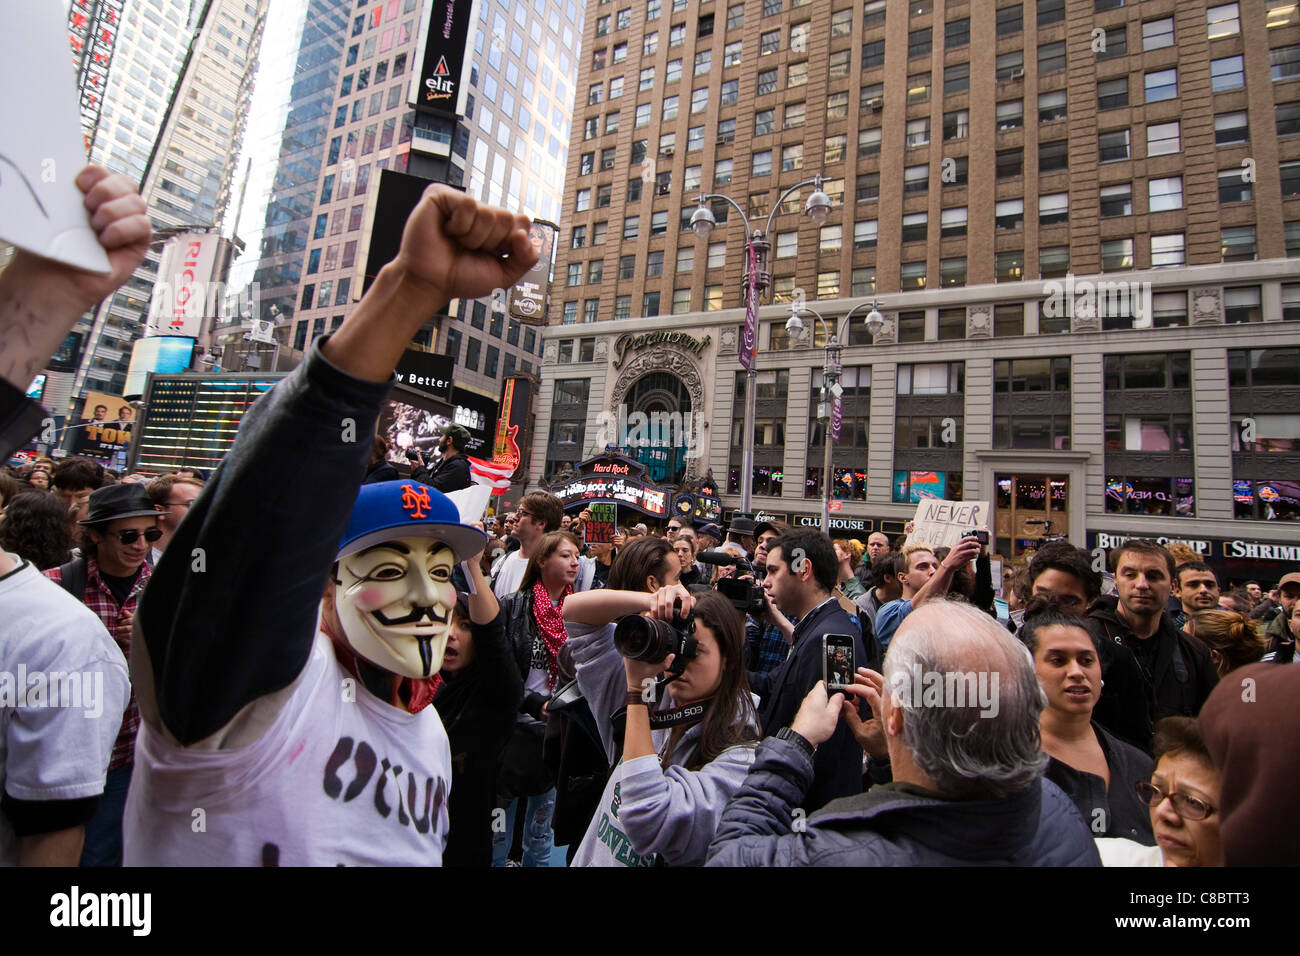 Uomo che indossa maschera di Guy Fawkes a un occupare Wall Street marcia di protesta in Times Square a New York City. Ottobre 15, 2011 Foto Stock